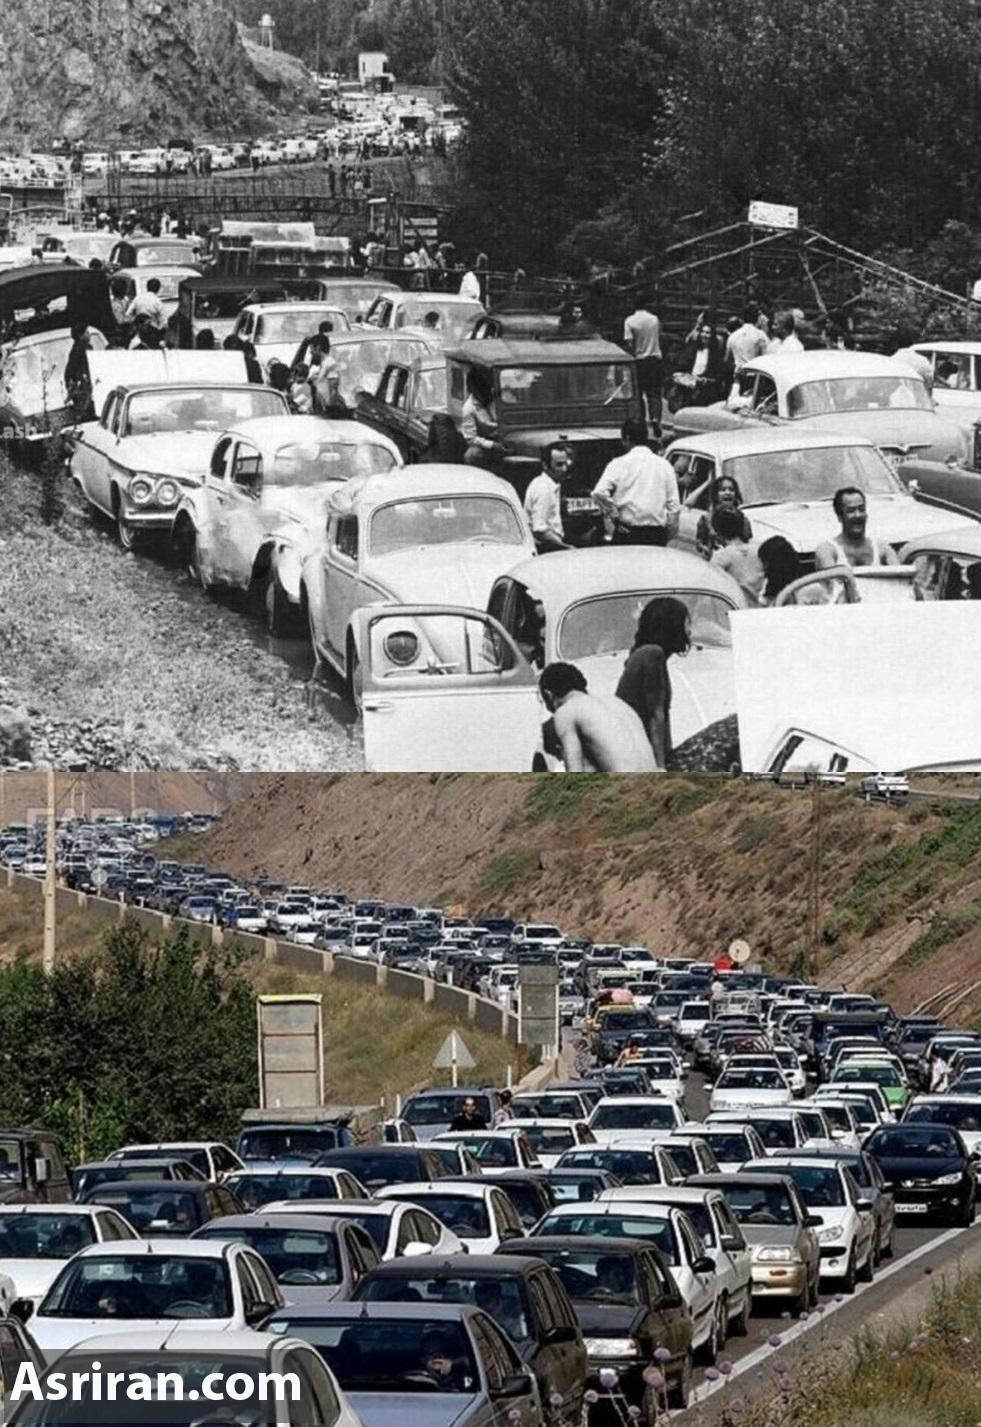 دو عکس جالب از جاده چالوس به فاصله ۶۰ سال